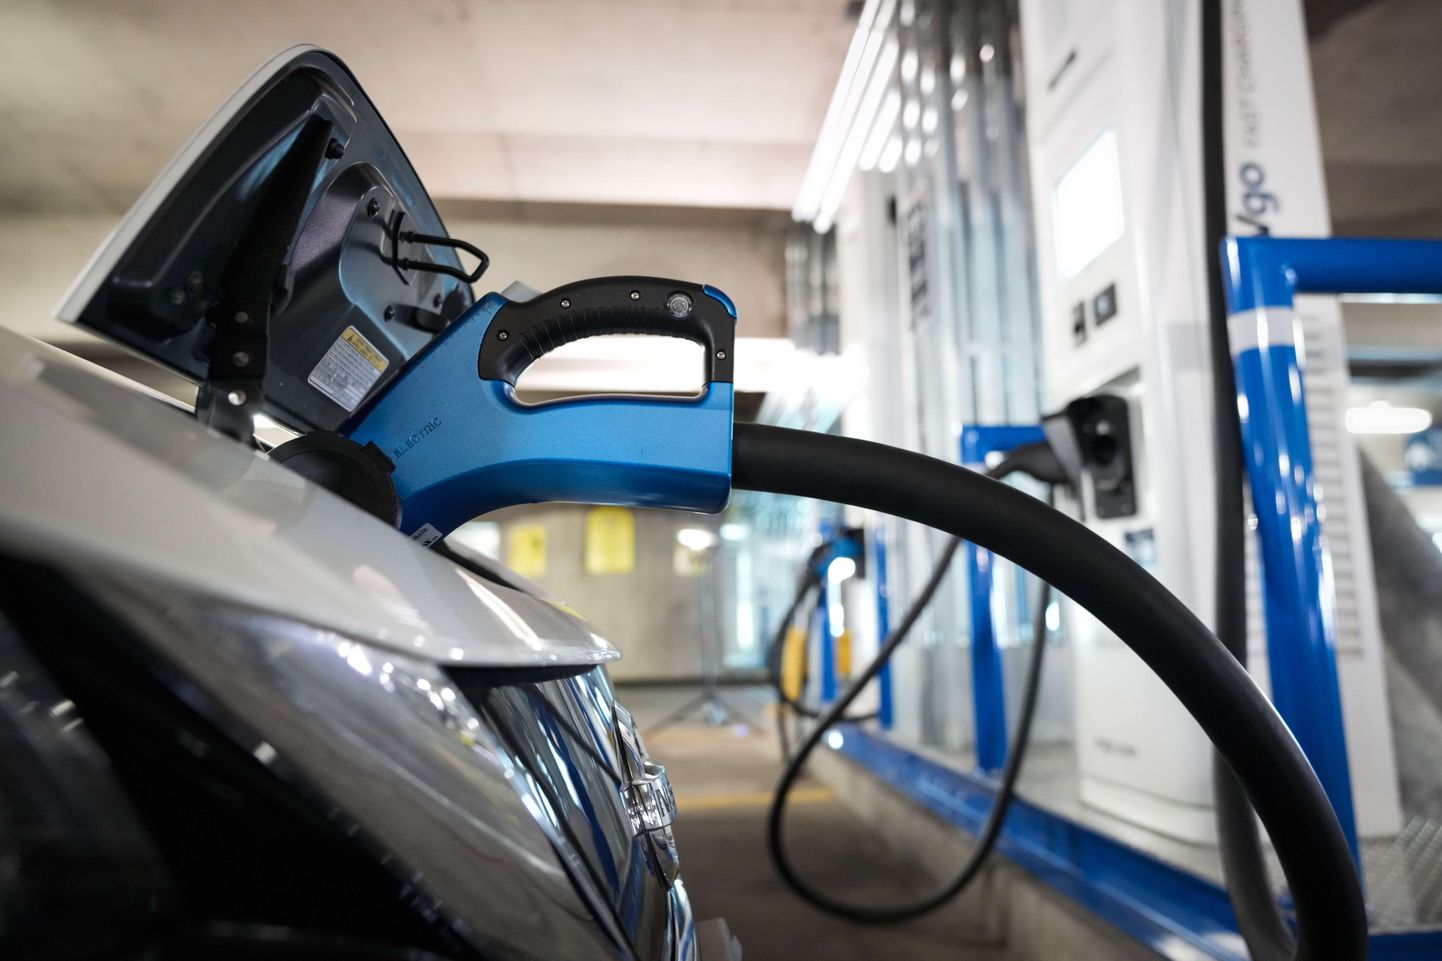 Elektriauto näidislaadimine Valge Maja kliimanõuniku Gina McCarthy ja transpordiministri Pete Buttigiegi pressikonverentsi eel Washingtonis 22. aprillil 2021.